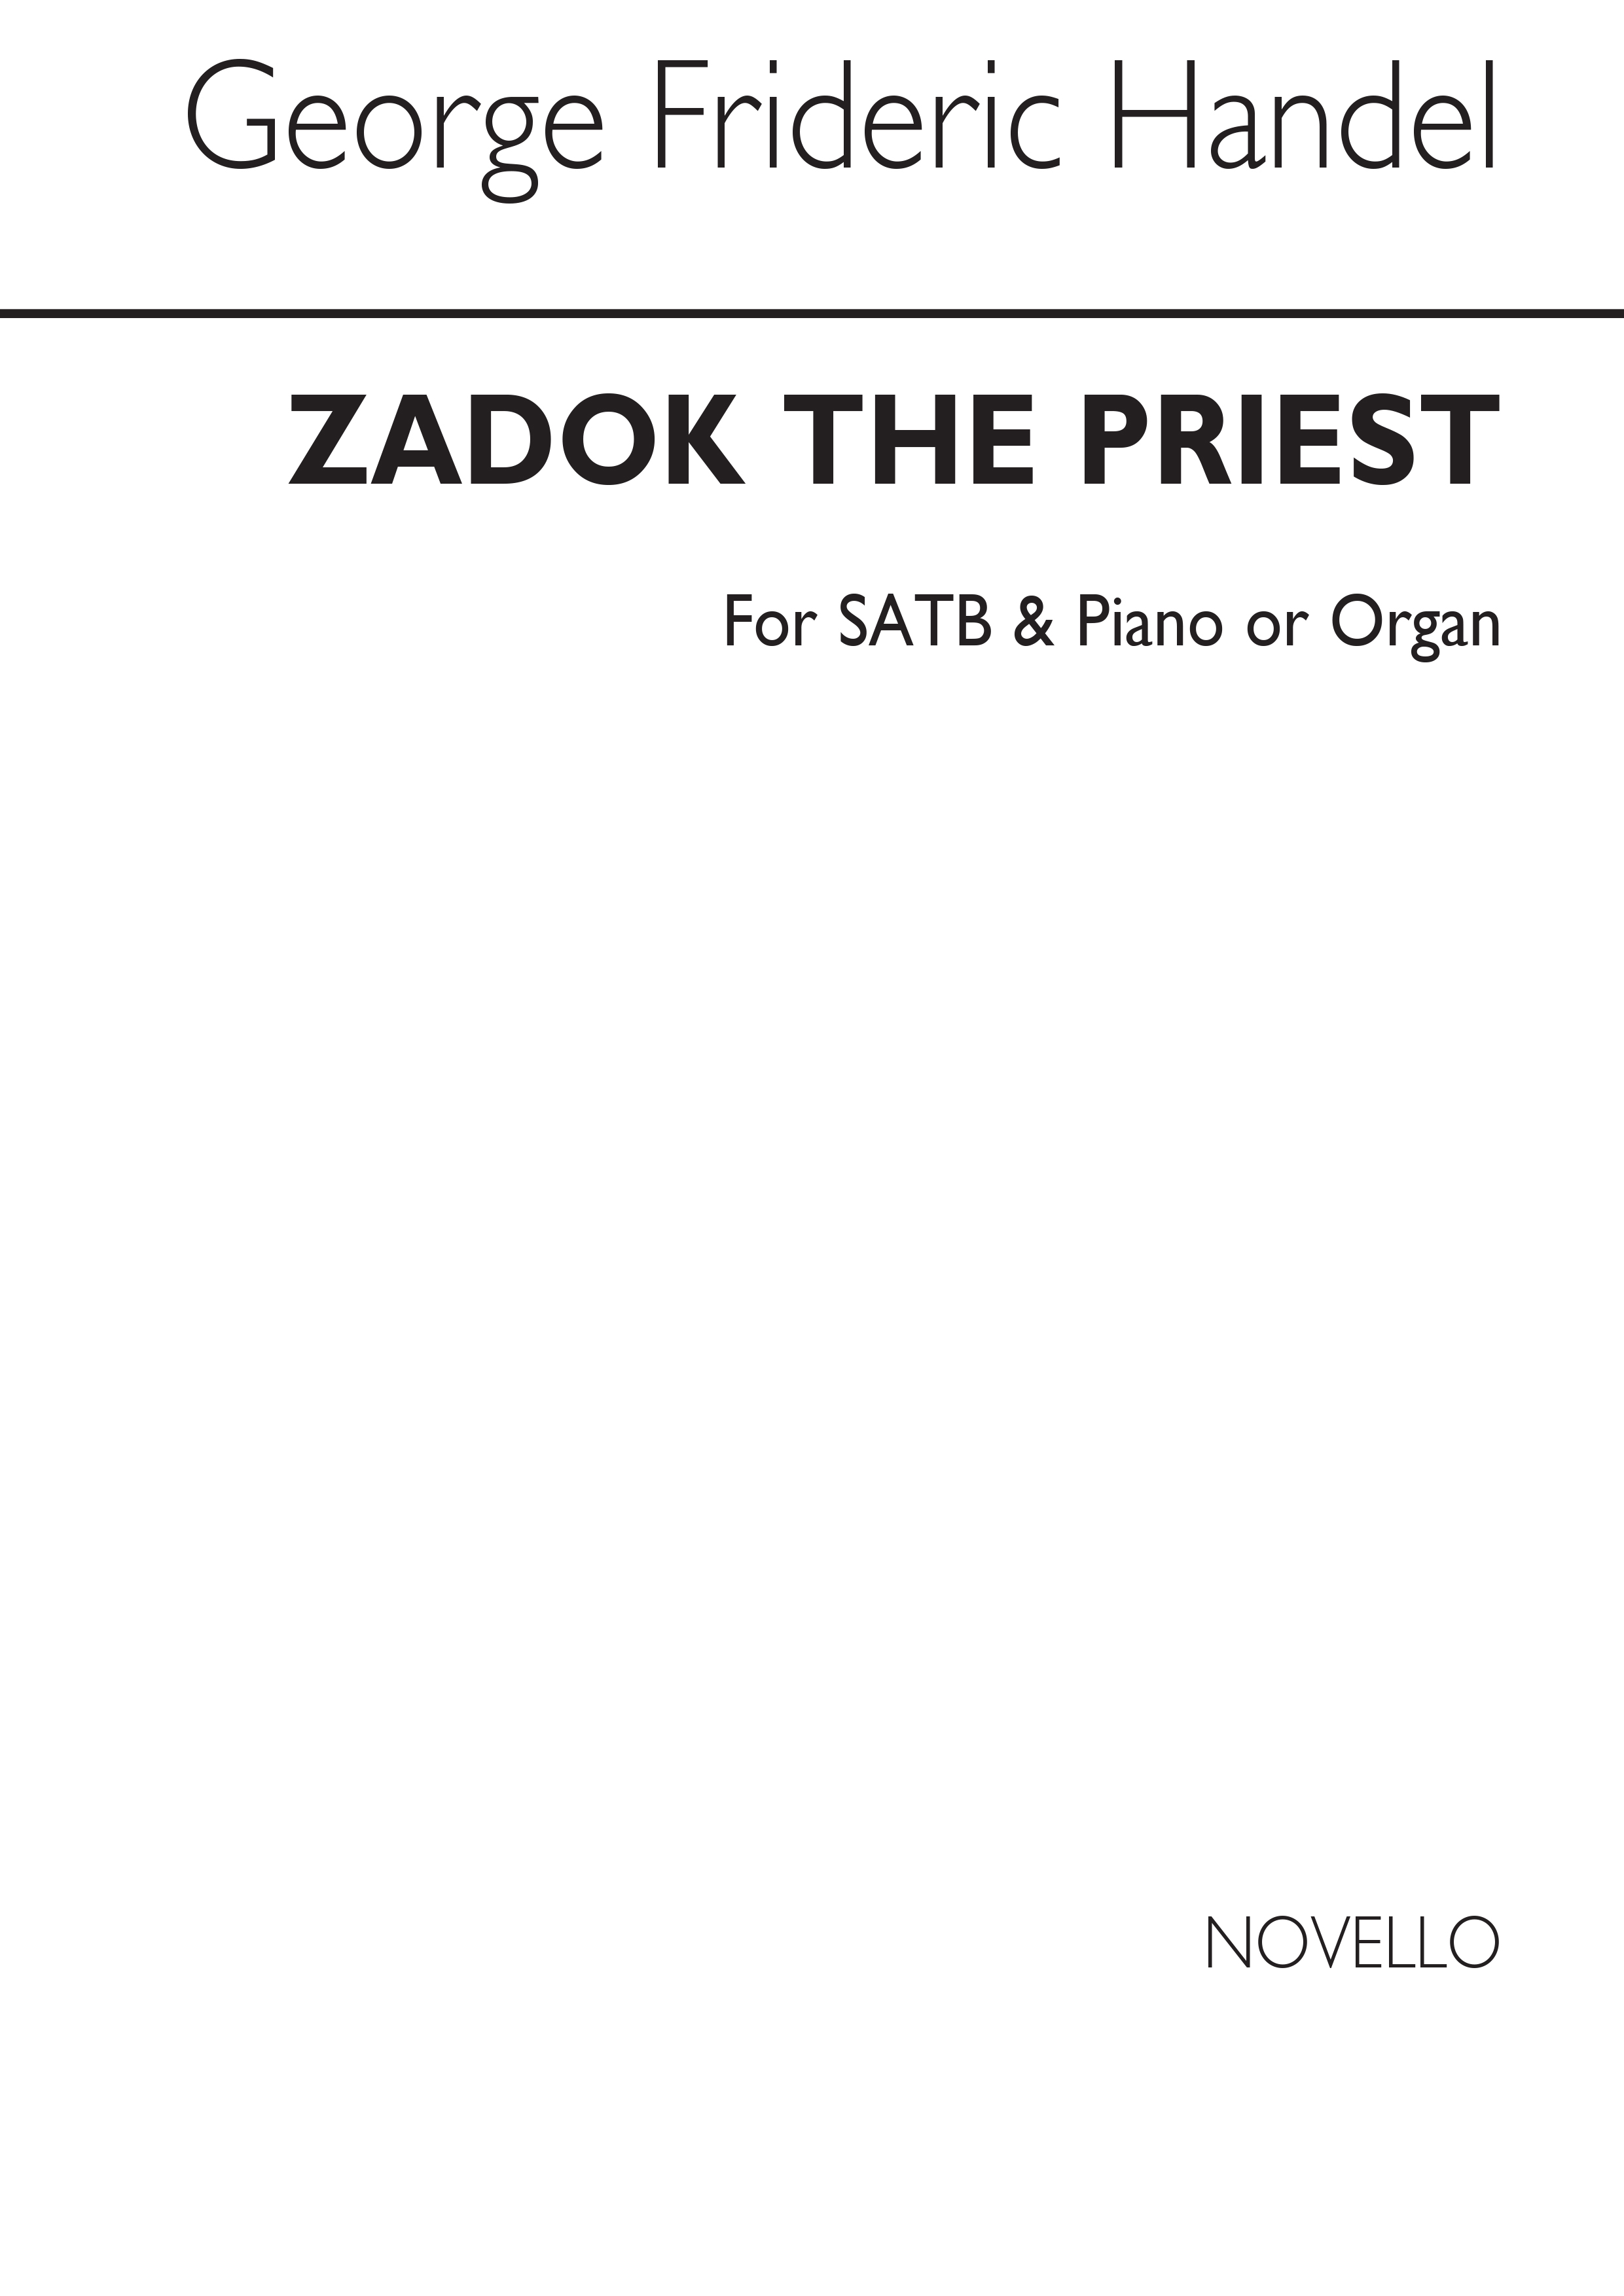 Georg Friedrich Händel: Coronation Anthem No.1 'Zadok The Priest' SSAATBB: SATB: